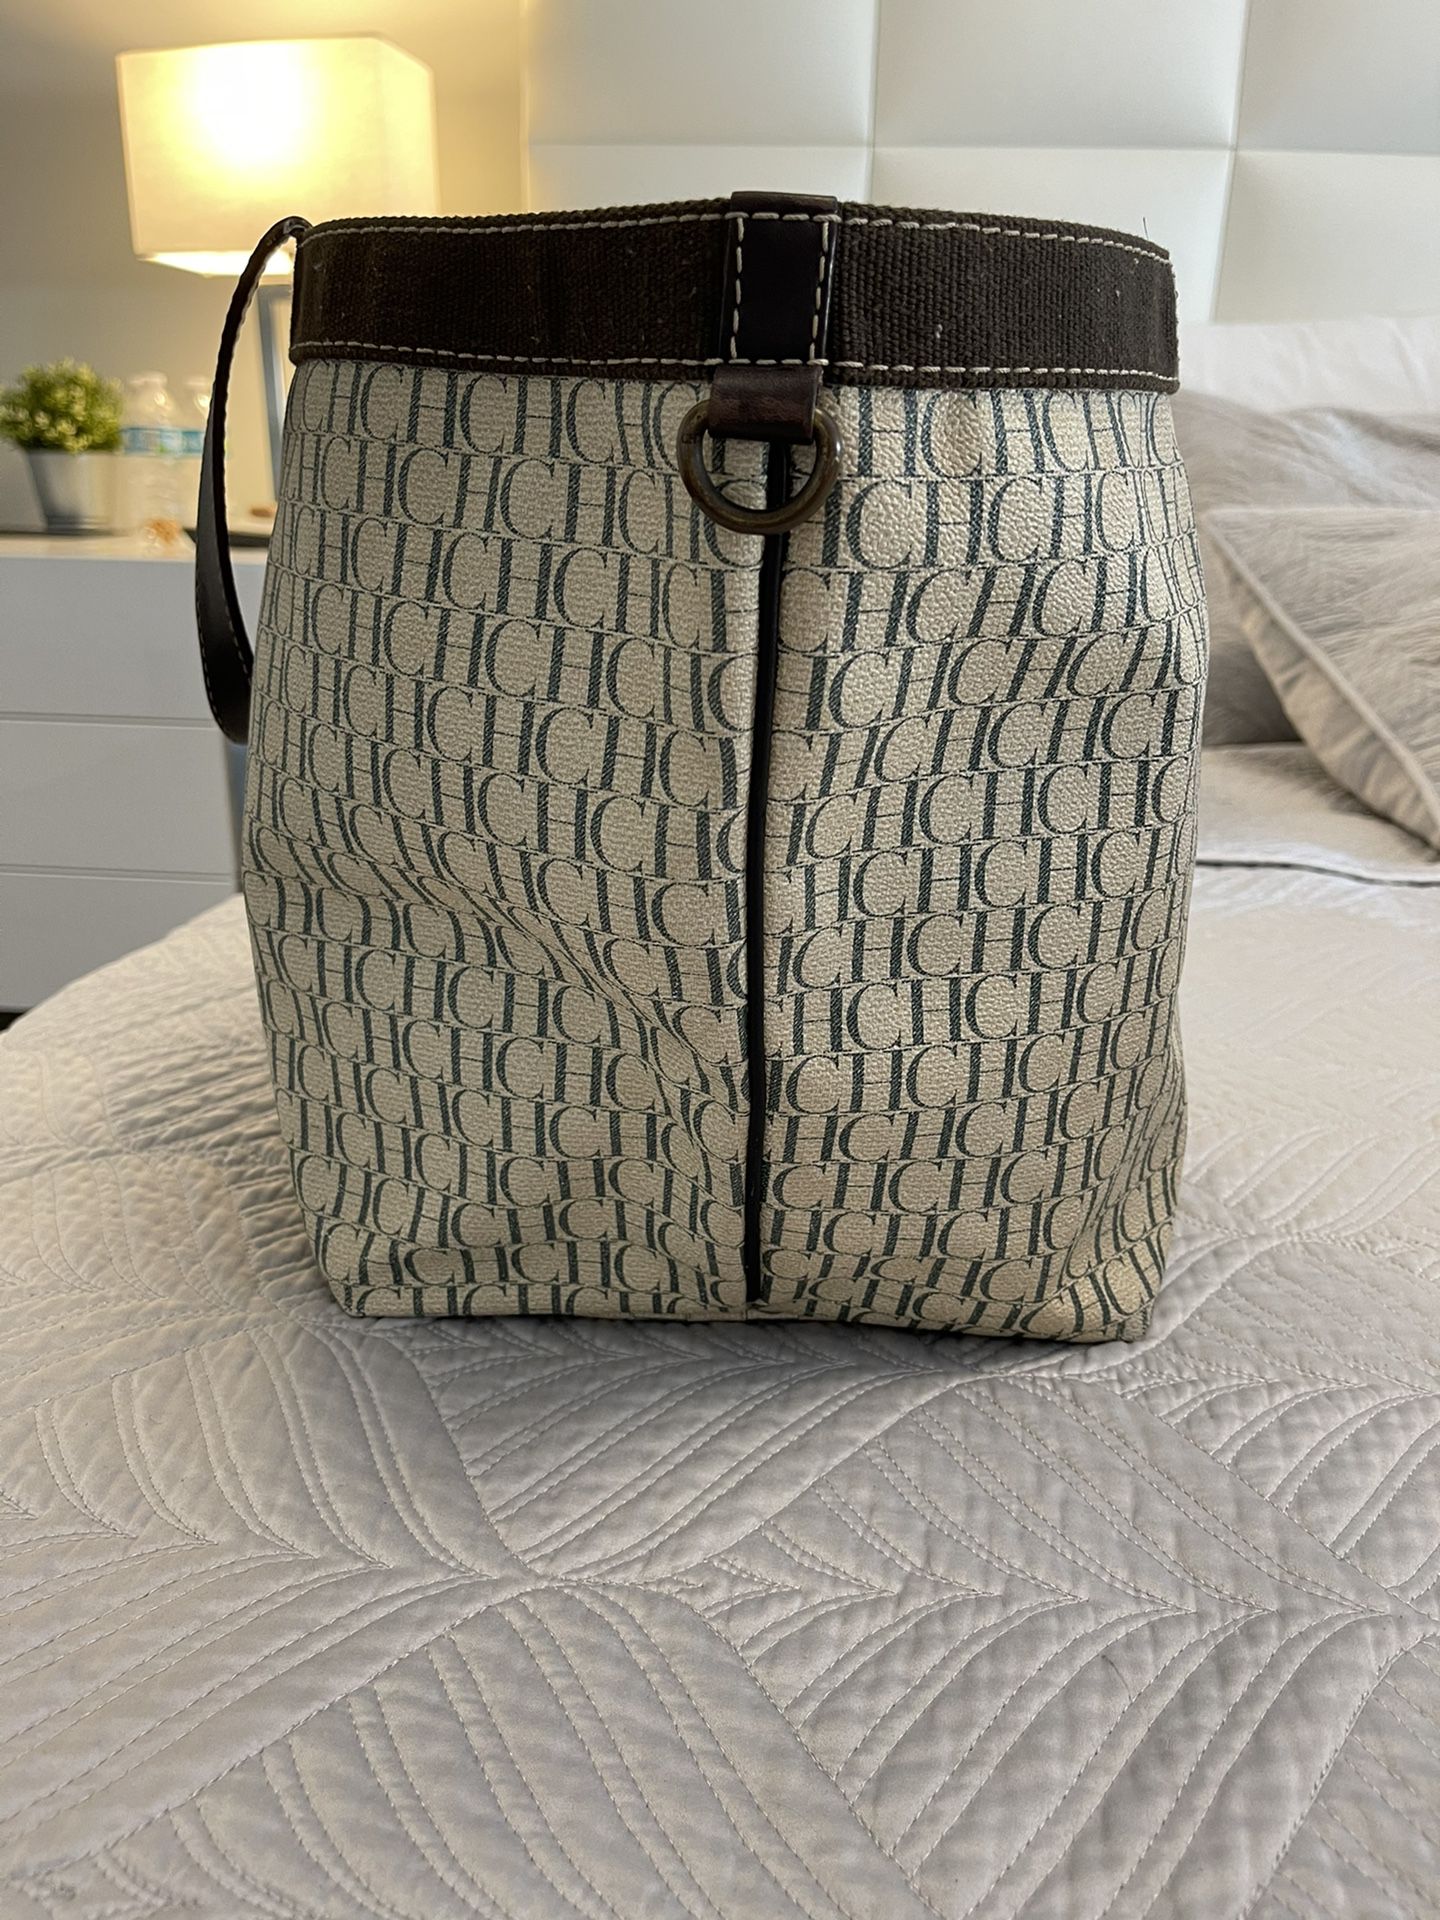 Carolina Herrera Leather Handbag 